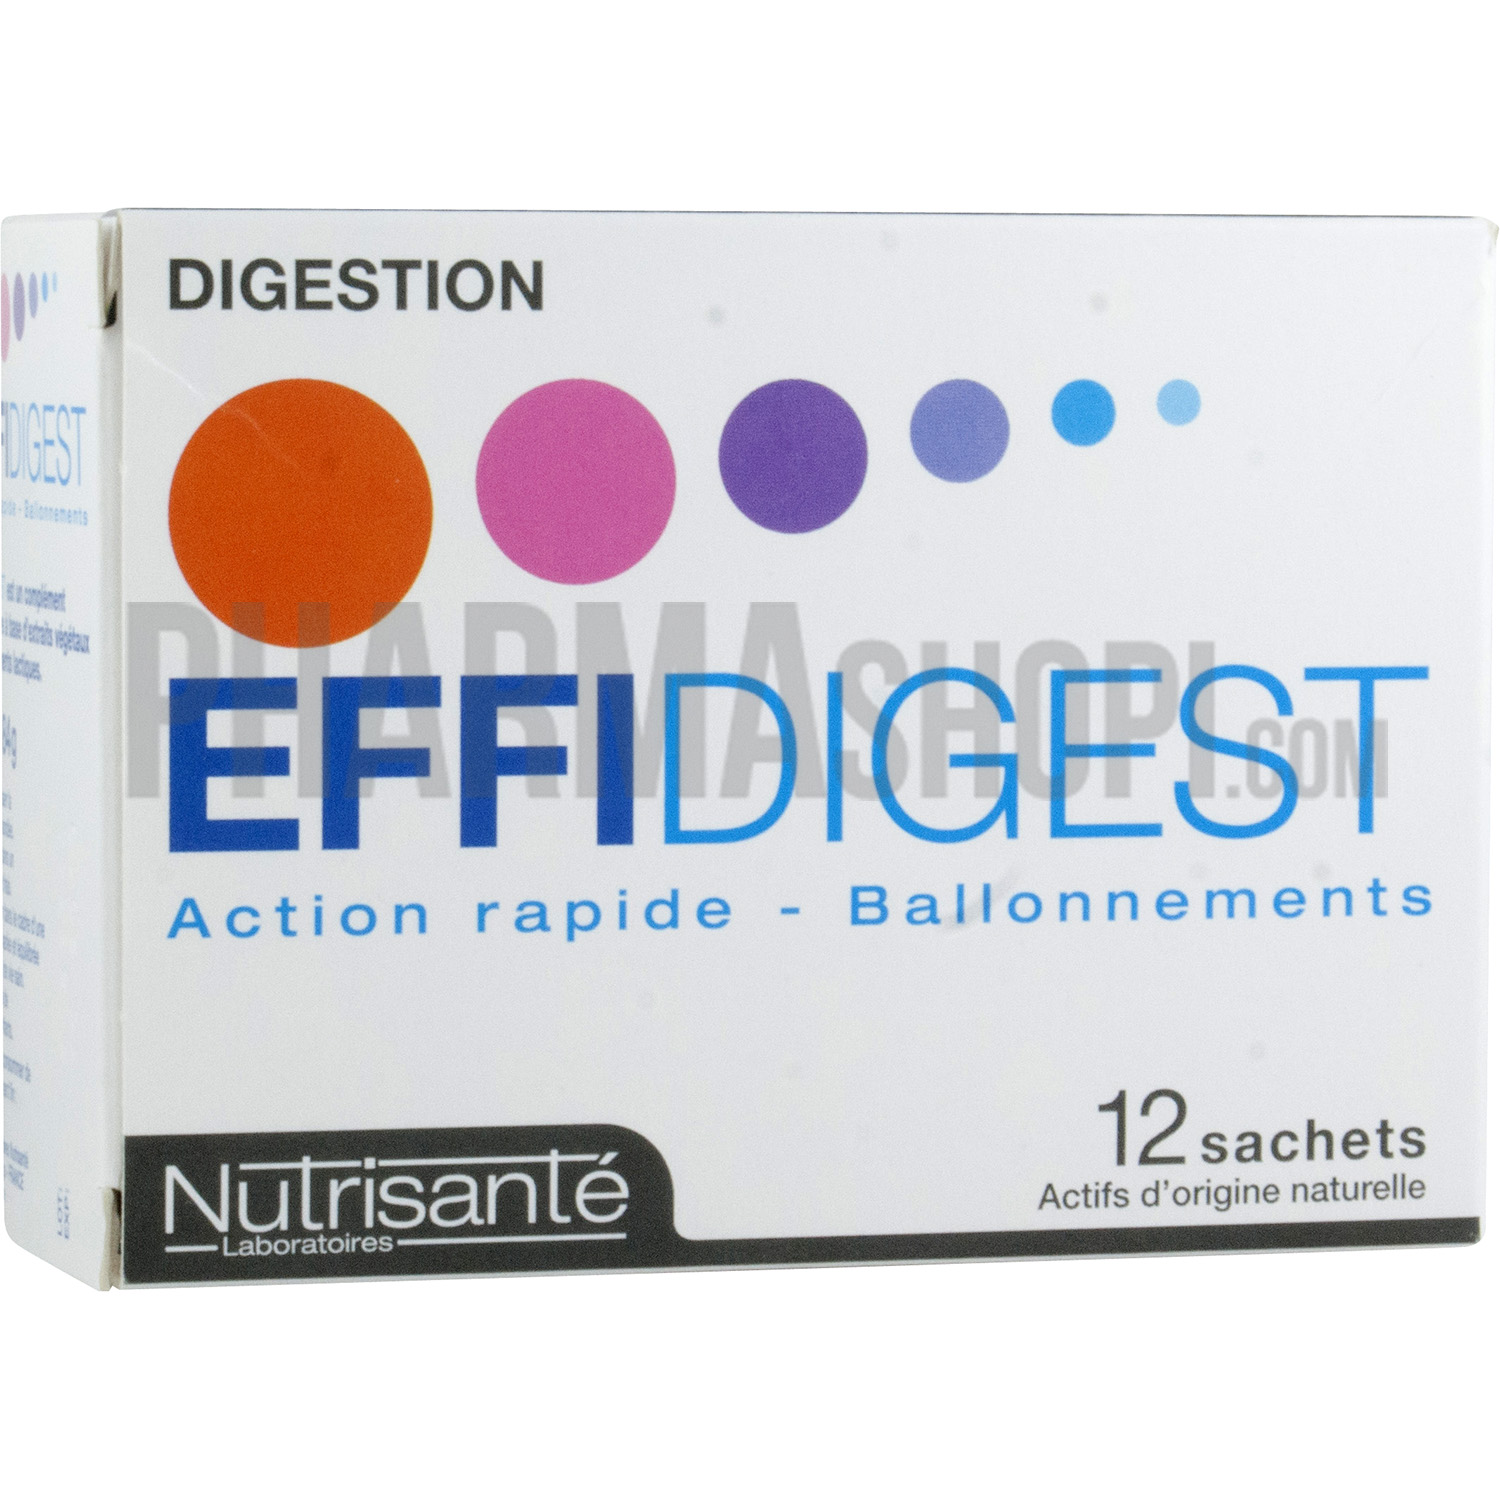 Effidigest digestion action rapide Nutrisanté - boite de 12 sachets